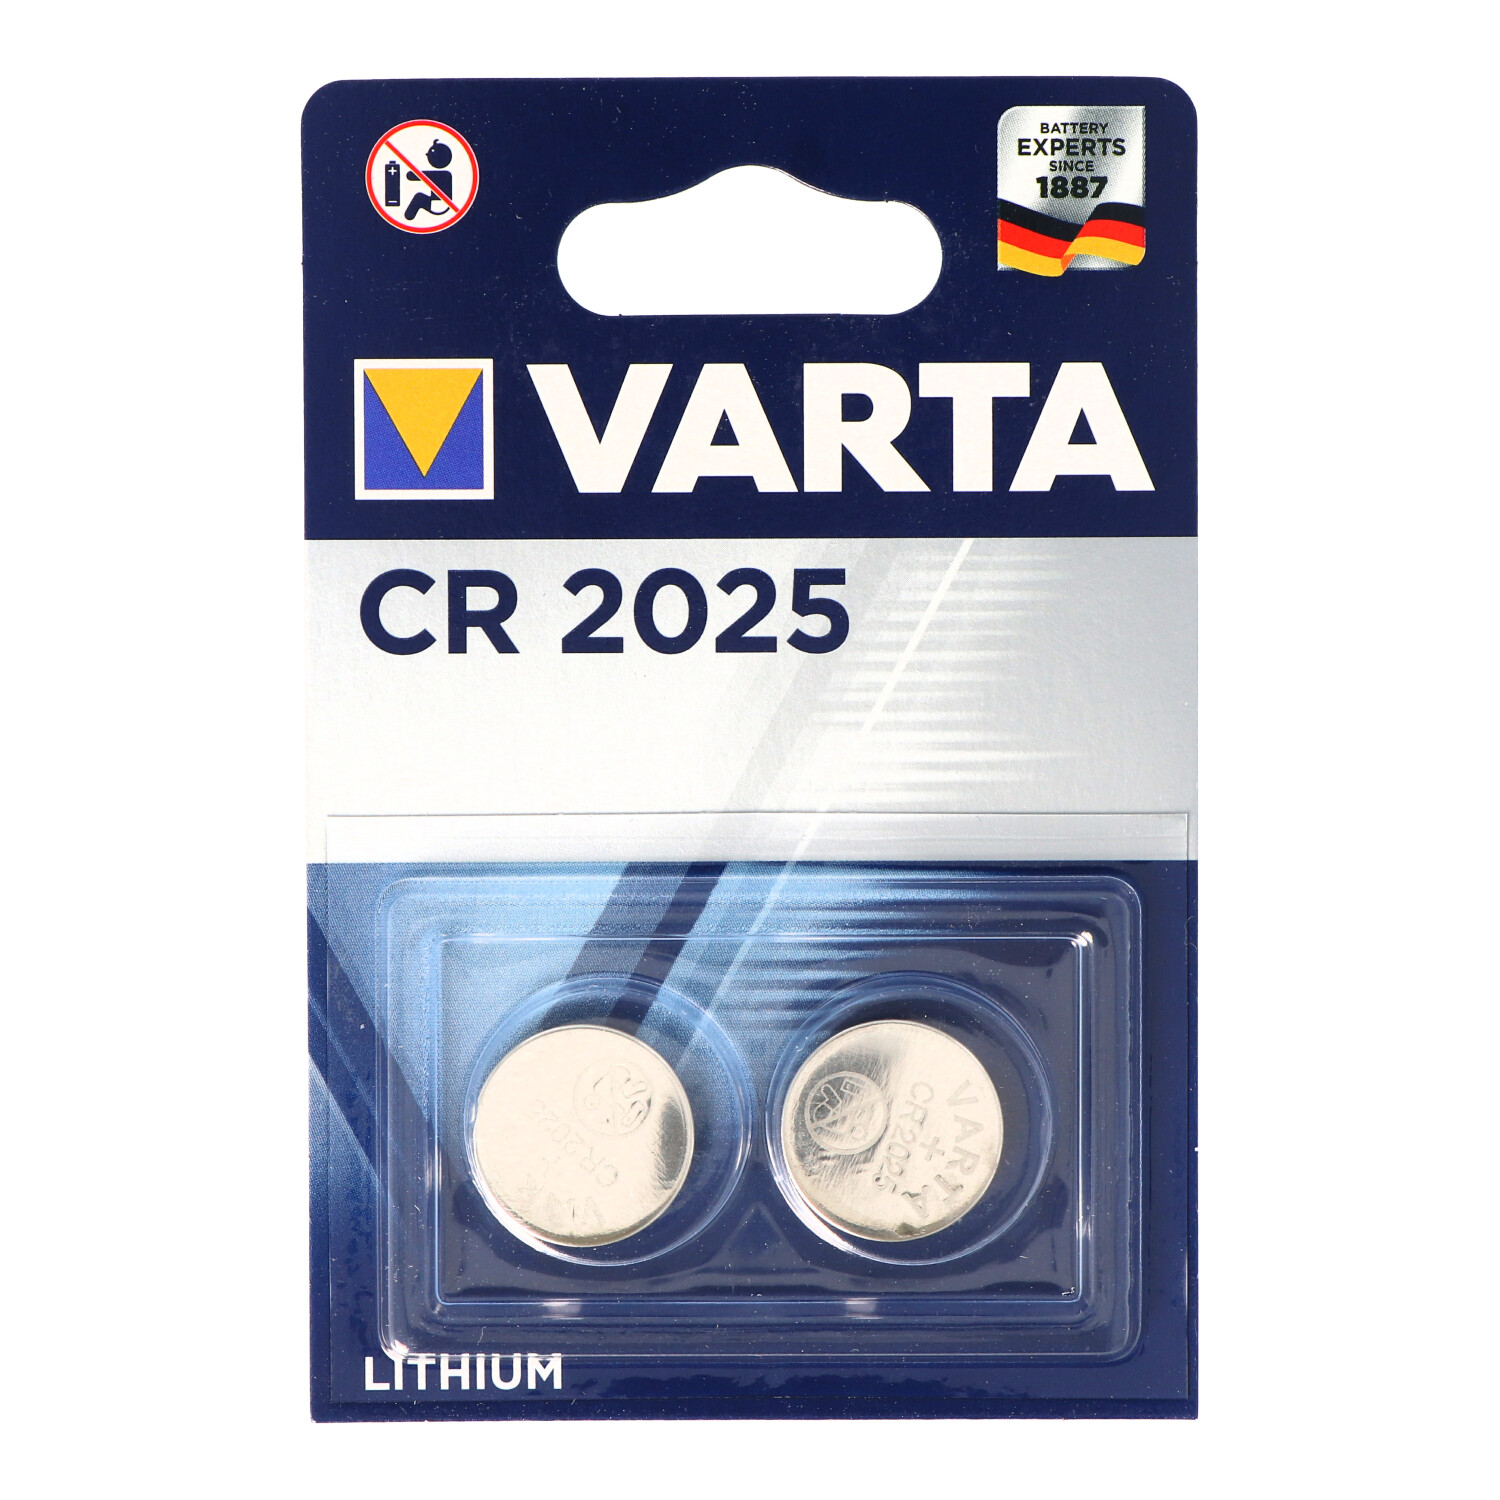 2 x Varta CR 2025 3V Lithium Batterie Knopfzelle 157mAh im 2er Blister 